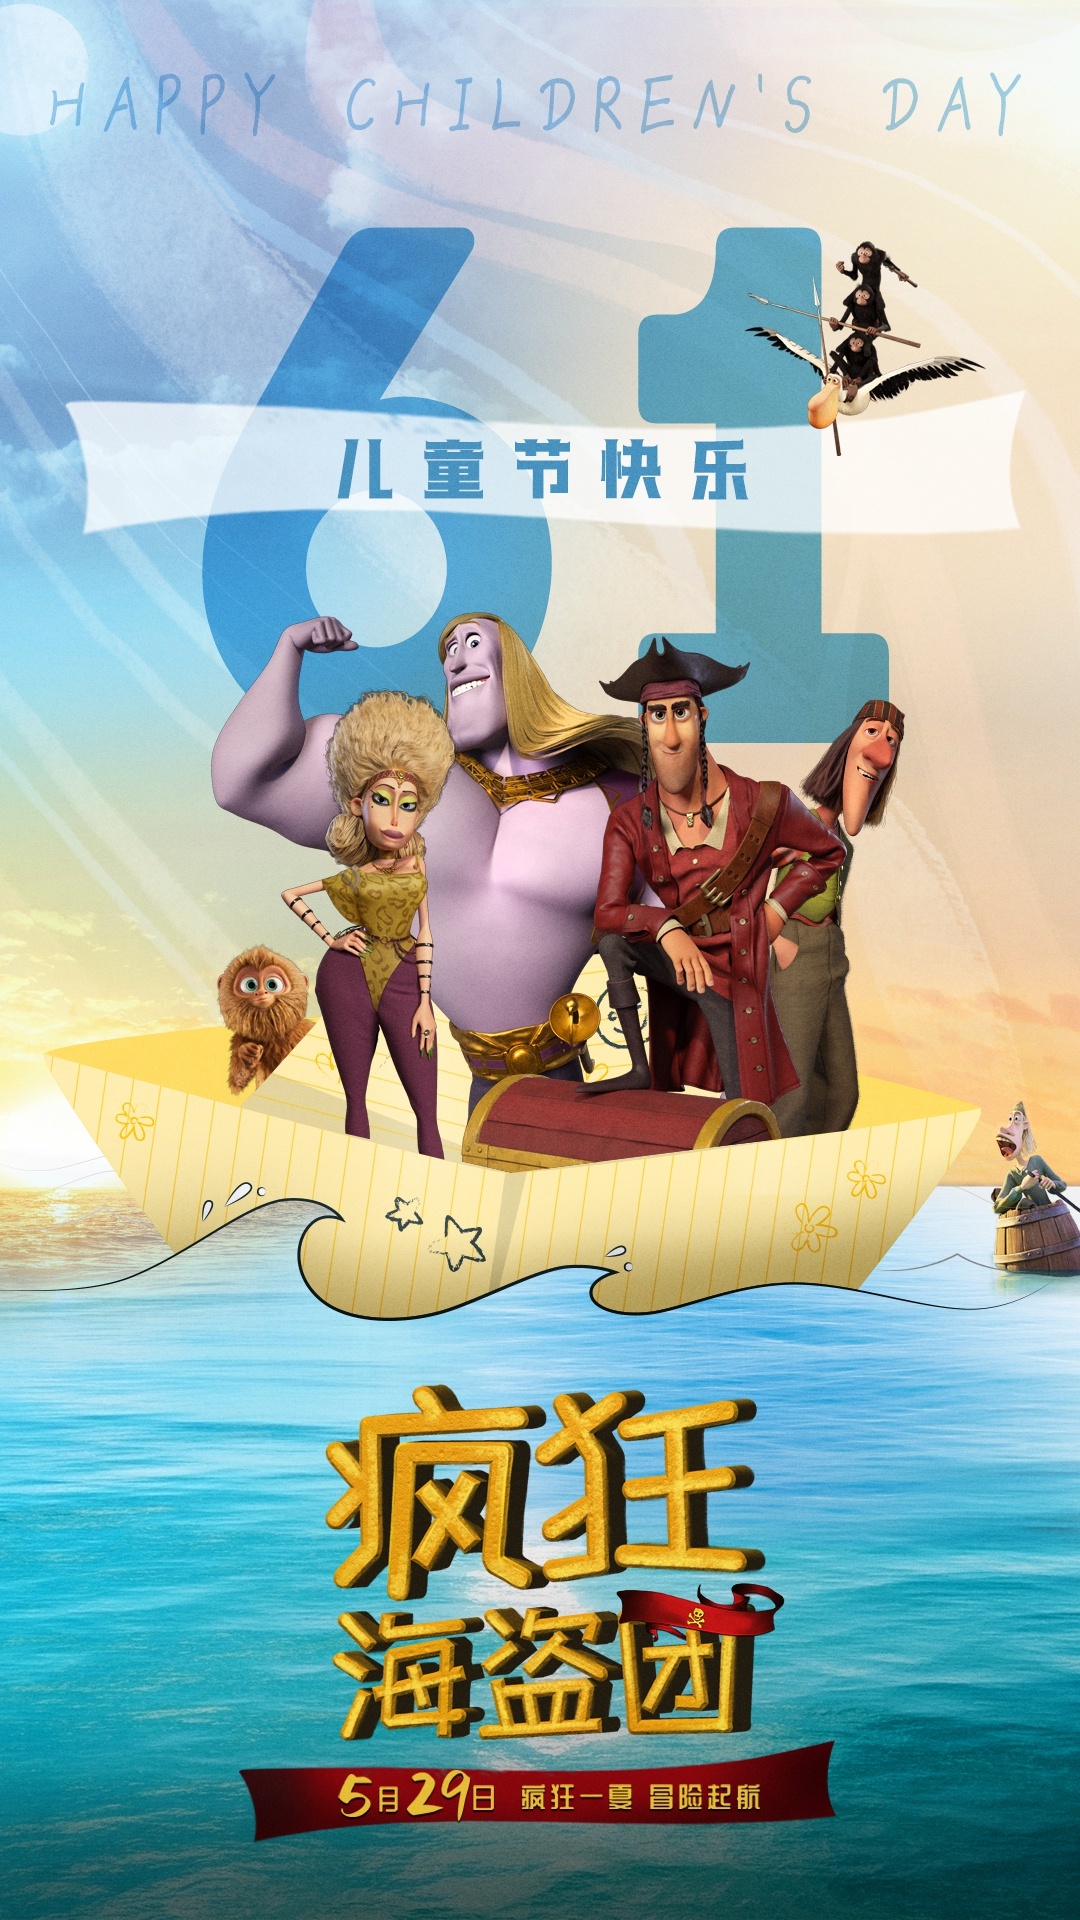 动画冒险电影《疯狂海盗团》发儿童节海报